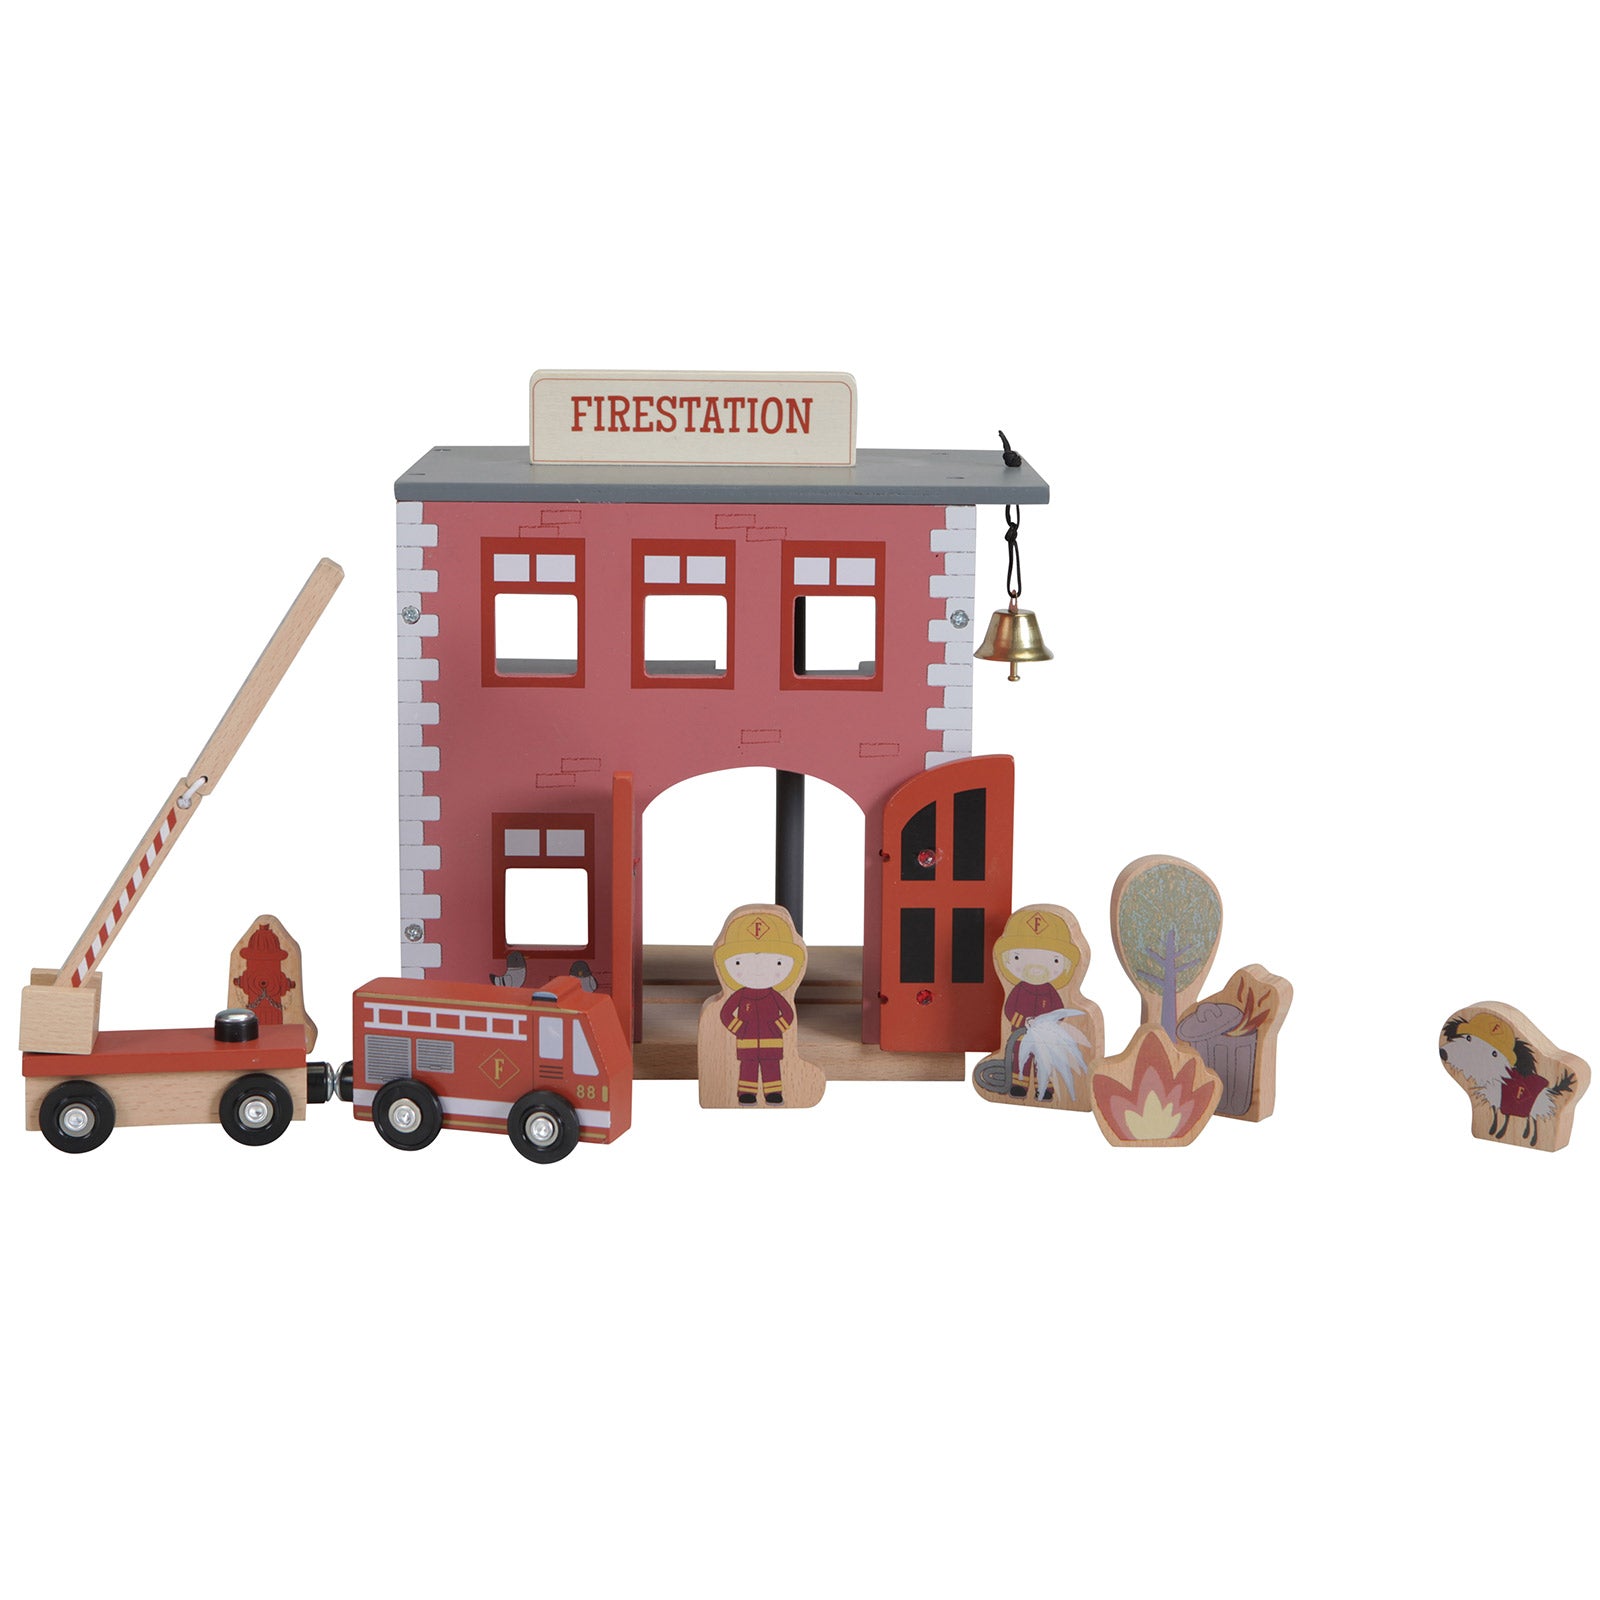 Caserne de pompier et ses figurines